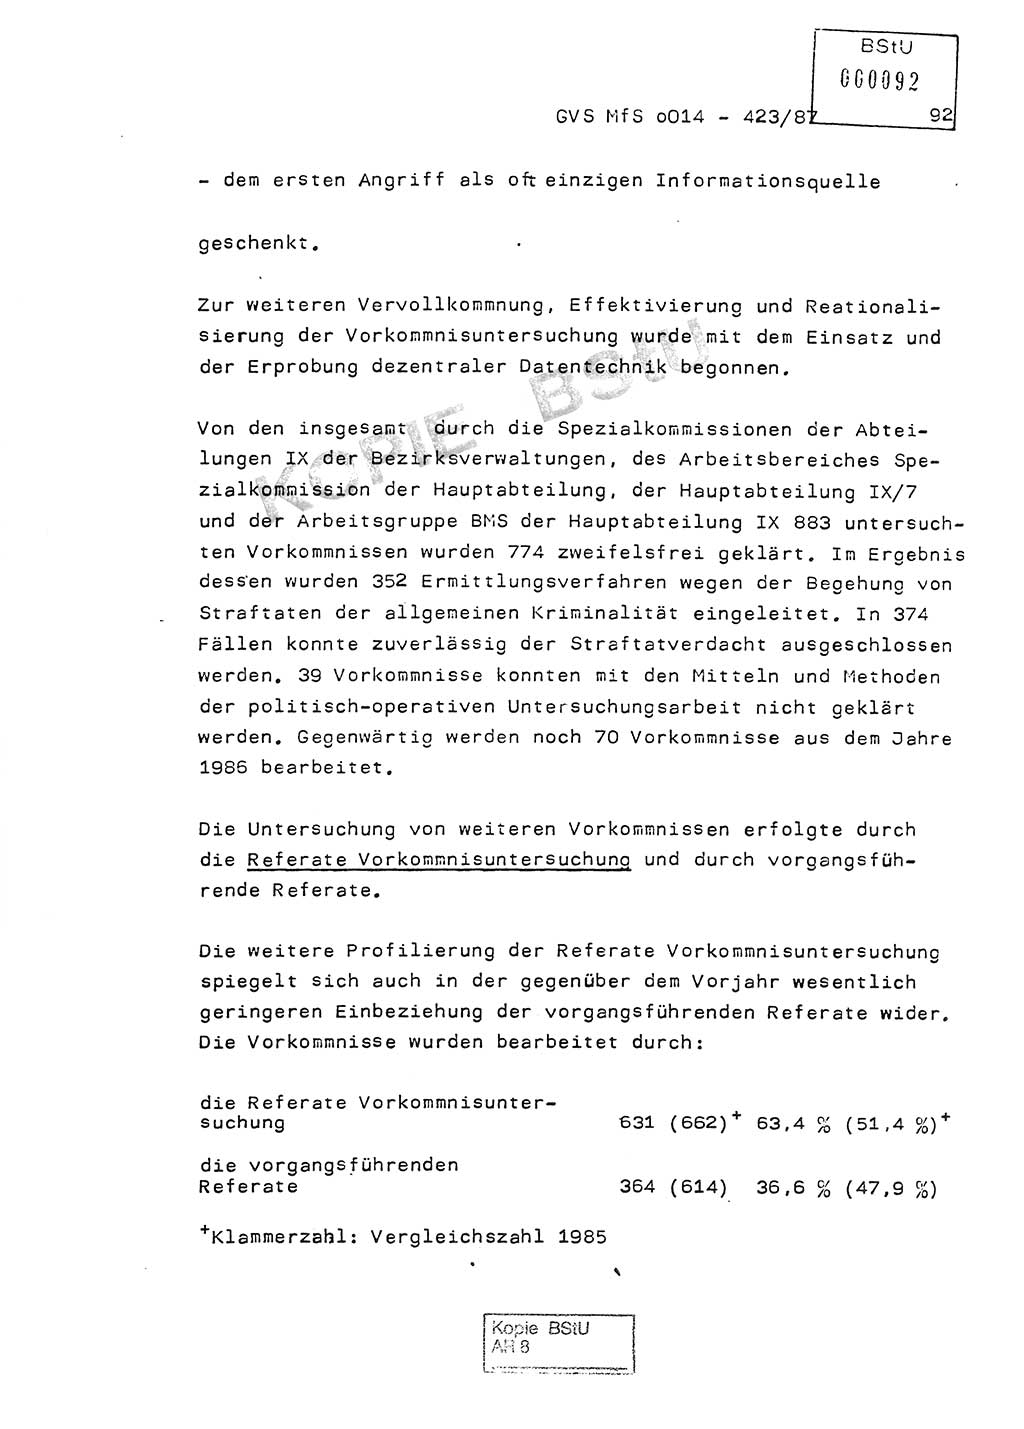 Jahresbericht der Hauptabteilung (HA) Ⅸ 1986, Einschätzung der Wirksamkeit der Untersuchungsarbeit im Jahre 1986, Ministerium für Staatssicherheit (MfS) der Deutschen Demokratischen Republik (DDR), Hauptabteilung Ⅸ, Geheime Verschlußsache (GVS) o014-423/87, Berlin 1987, Seite 92 (Einsch. MfS DDR HA Ⅸ GVS o014-423/87 1986, S. 92)